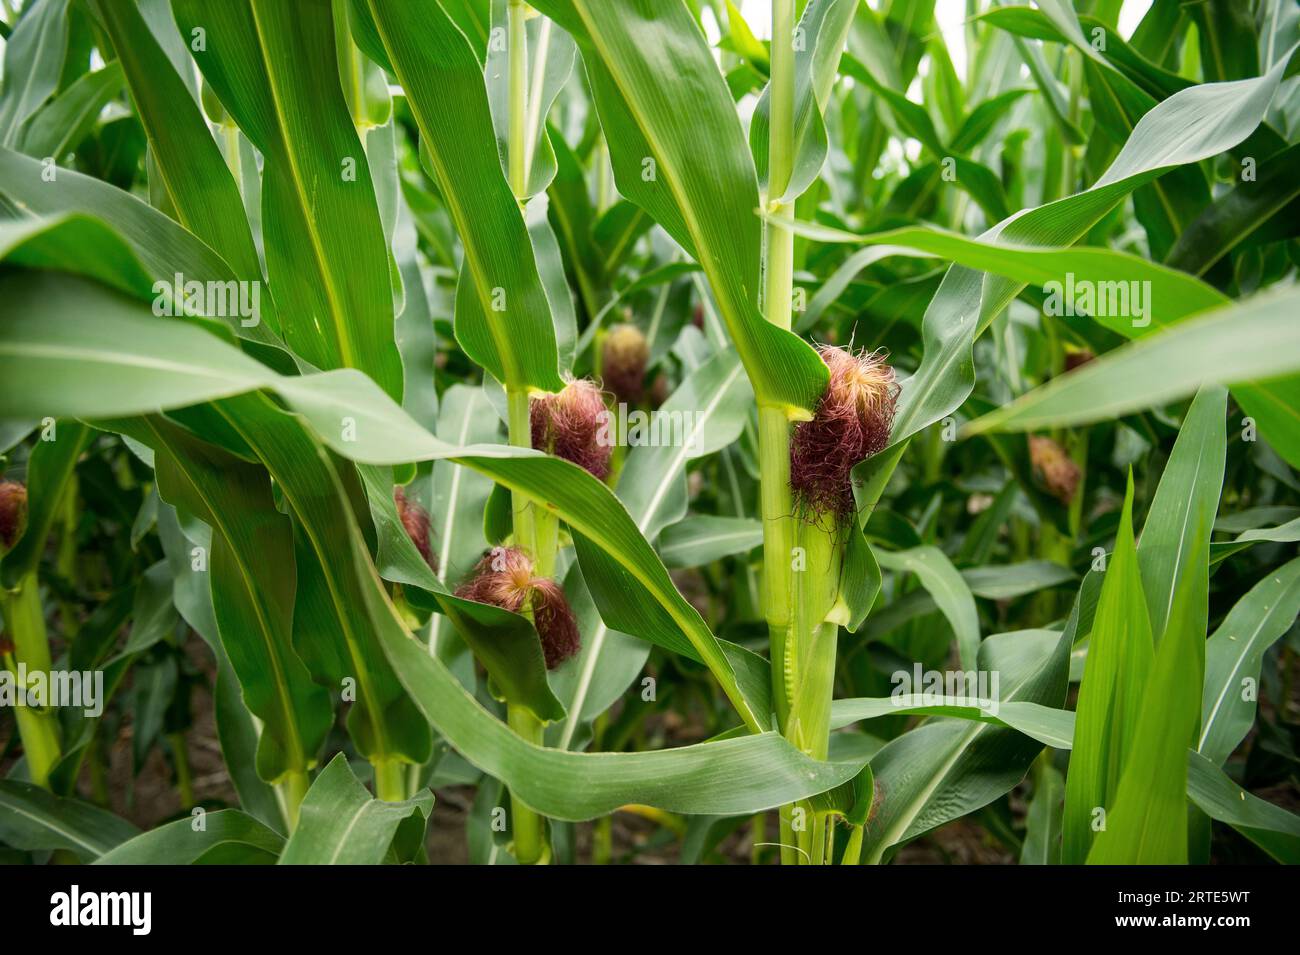 Primo piano degli steli di mais nelle prime fasi di crescita; Walton, Nebraska, Stati Uniti d'America Foto Stock